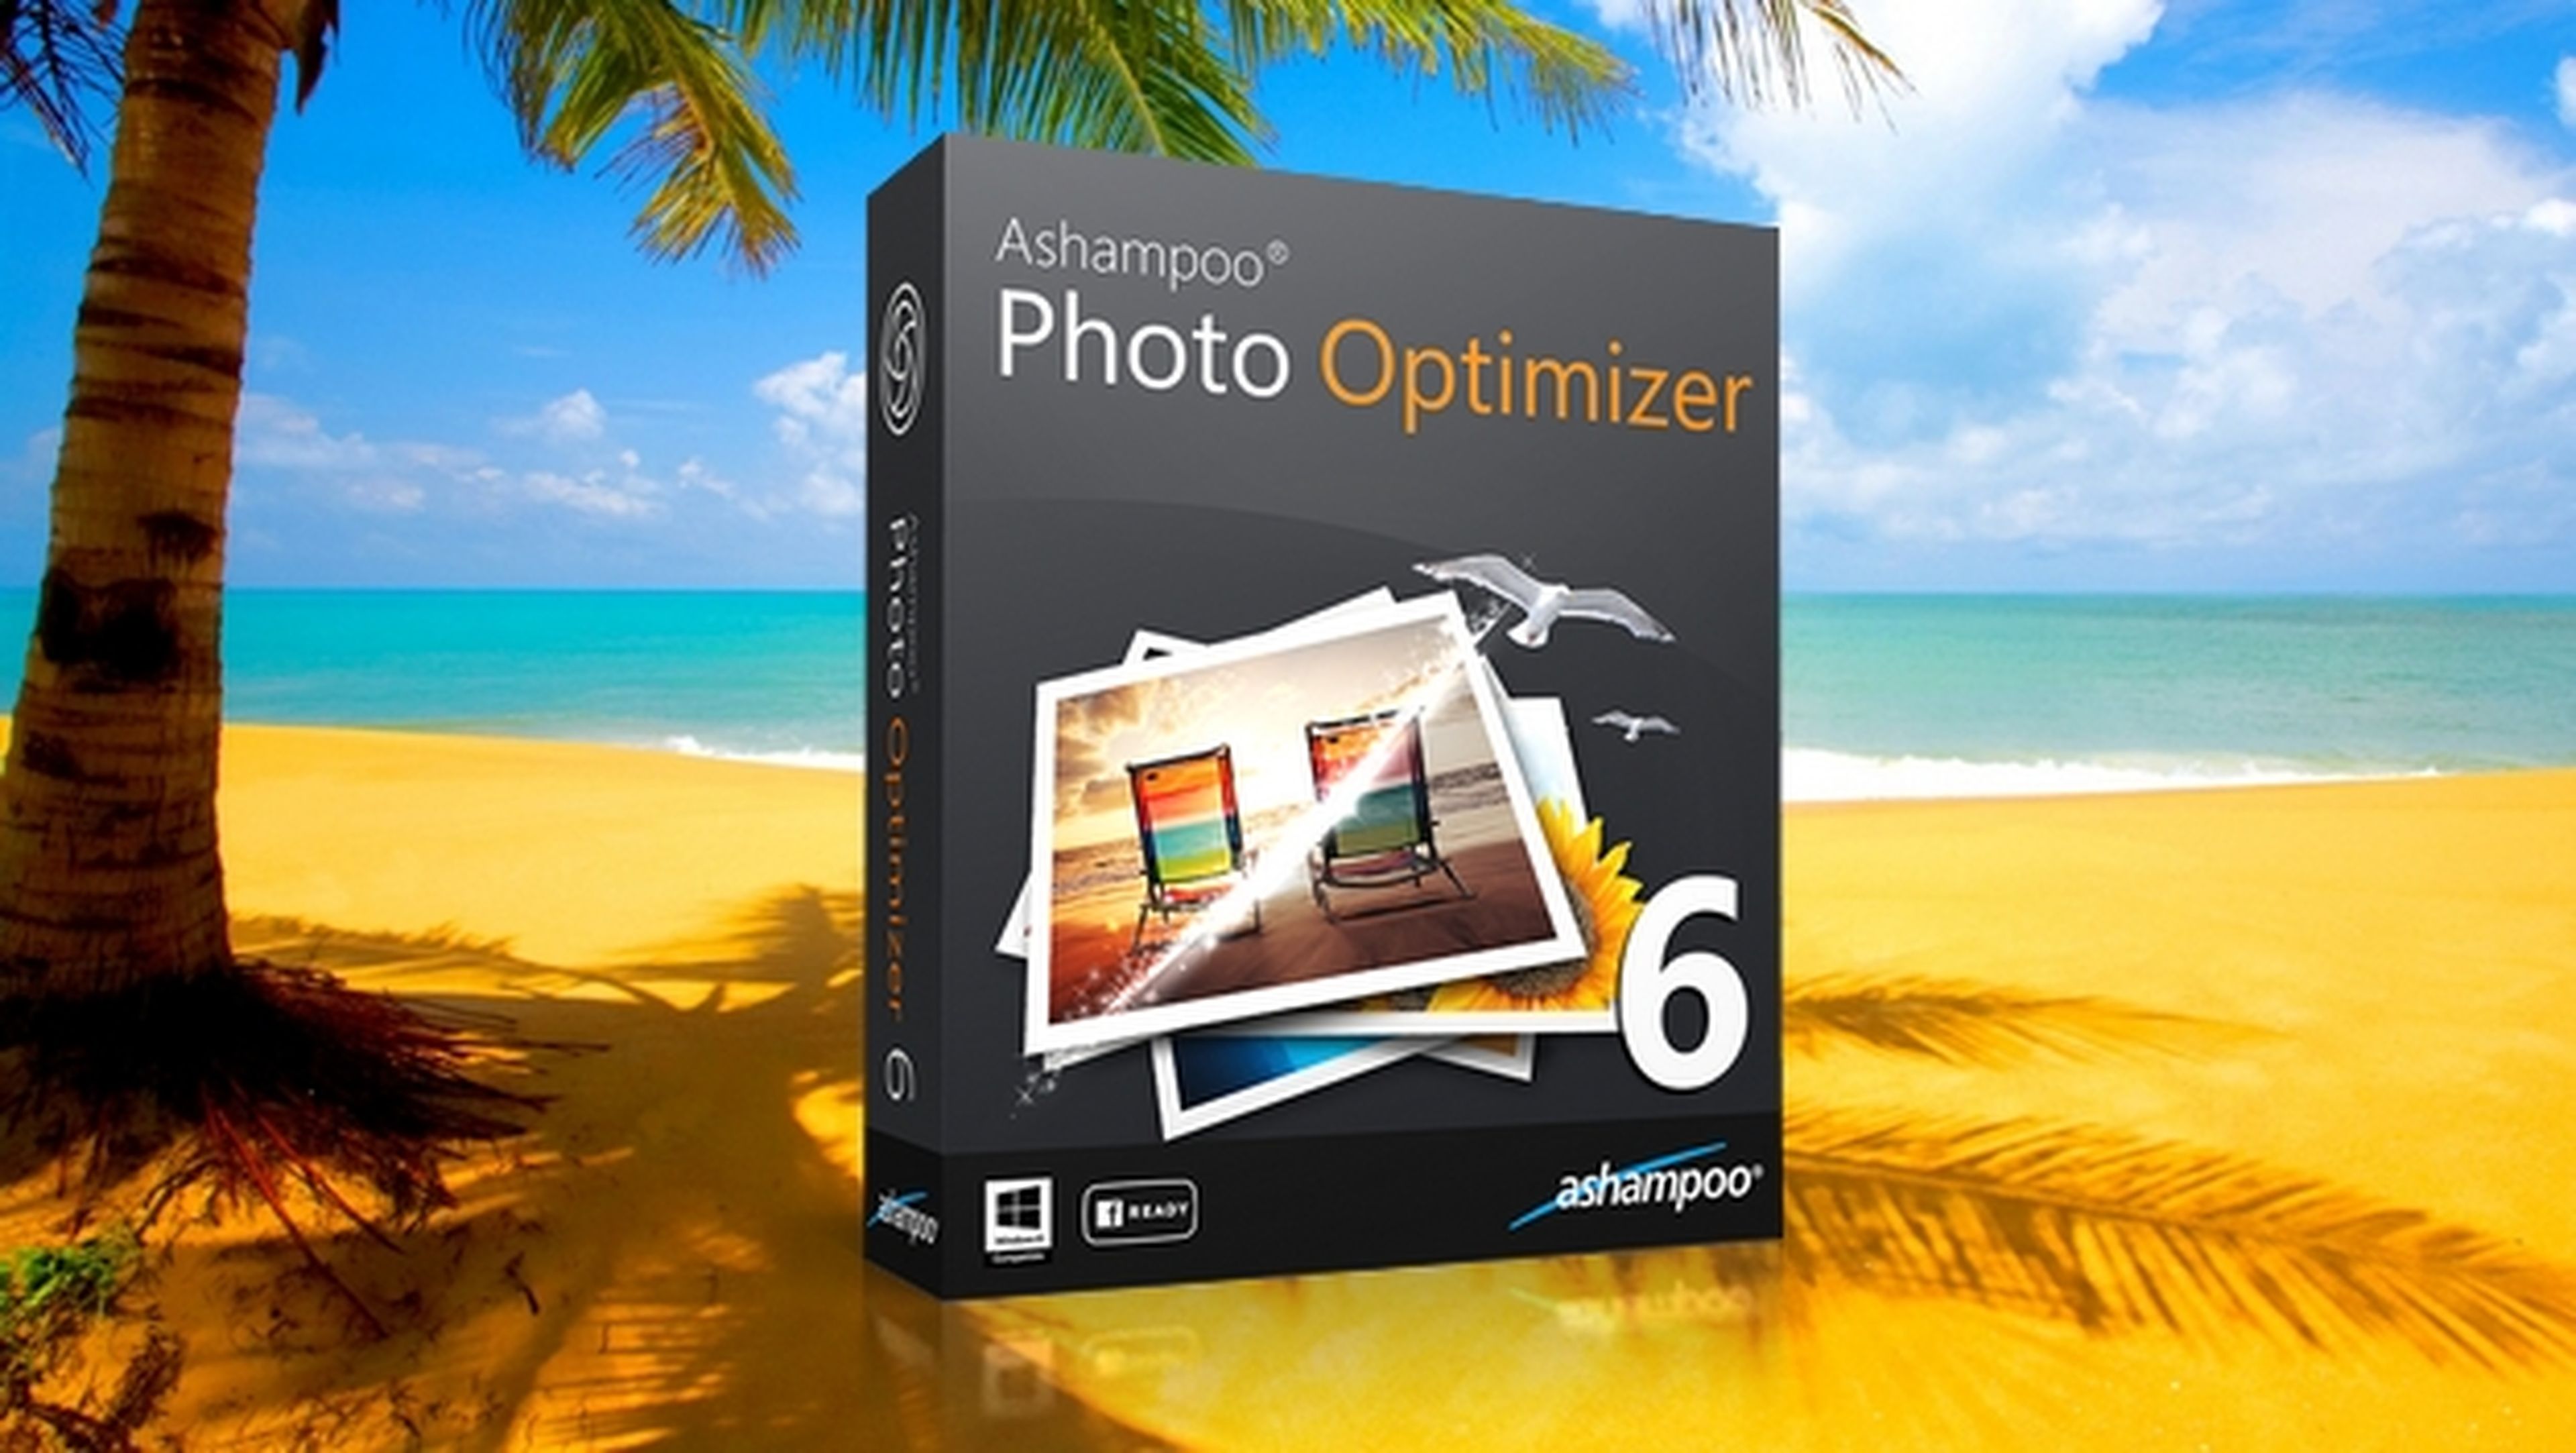 Ashampoo Photo Optimizar 6, el editor fotográfico para corregir y mejorar tus fotos de forma sencilla y automática.